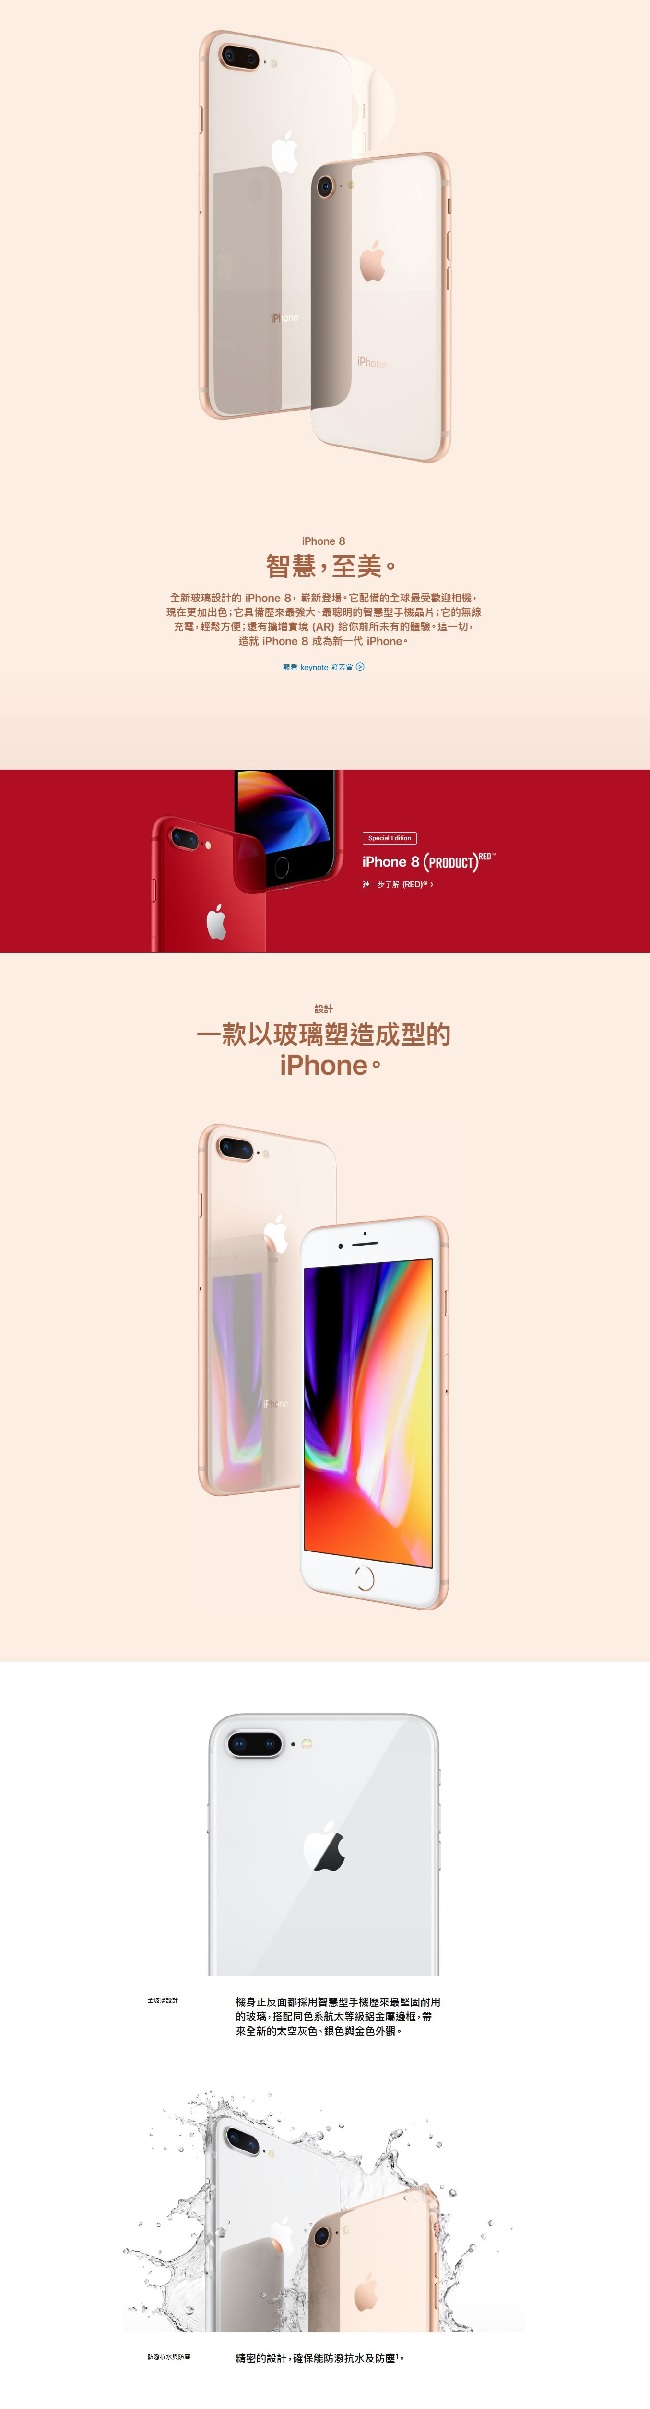 【福利品】Apple iPhone 8 256G 4.7吋智慧手機